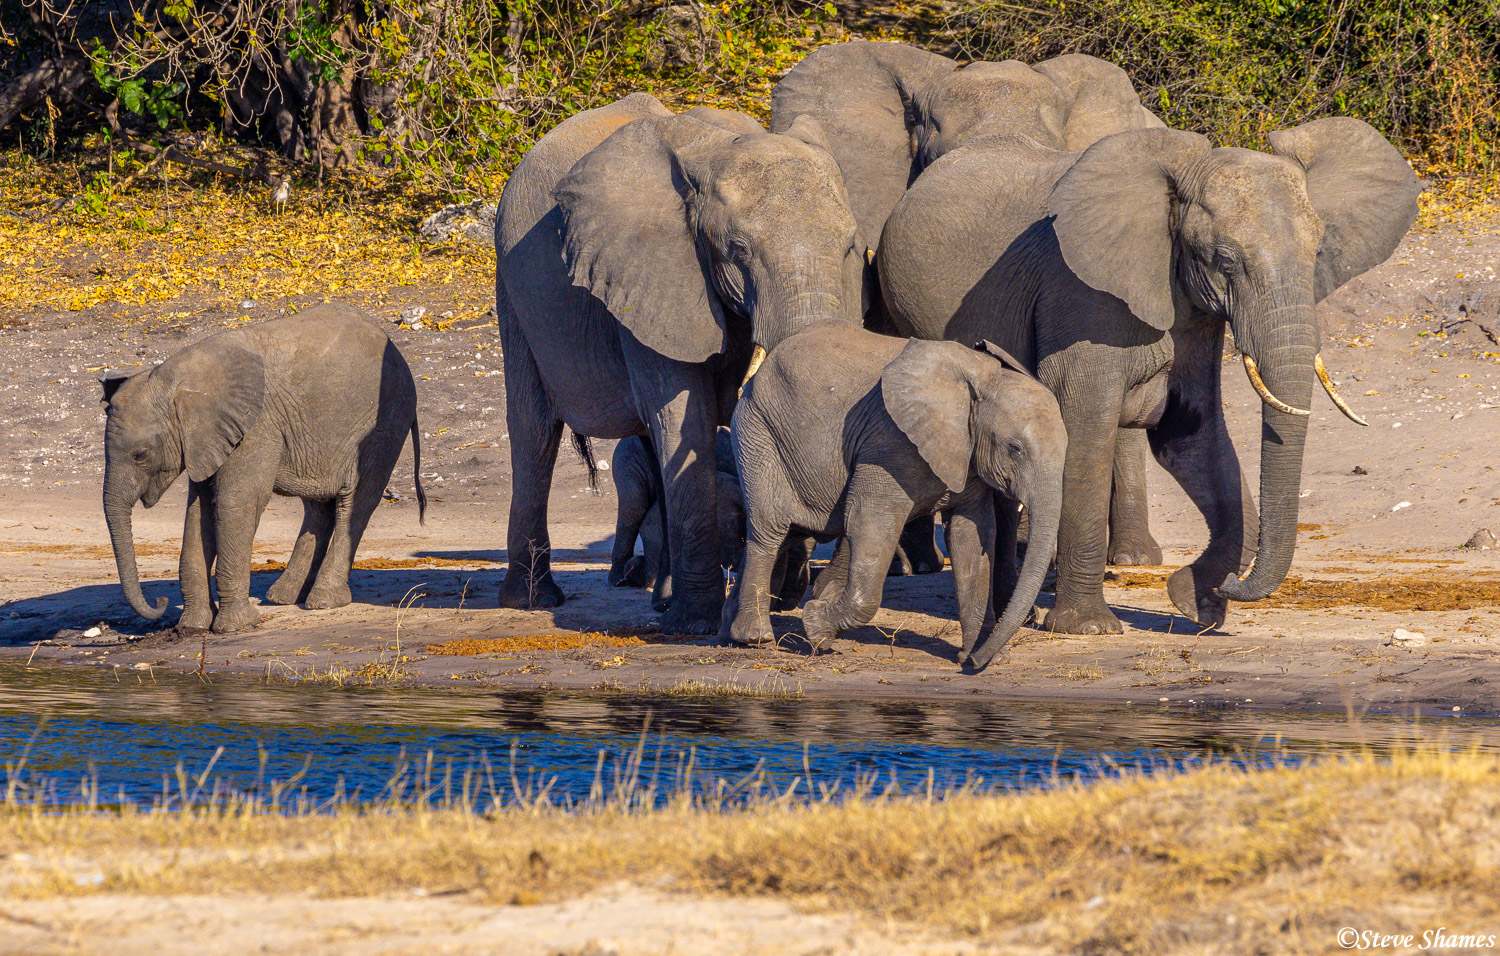 Family of elephants at Chobe National Park in Botswana.